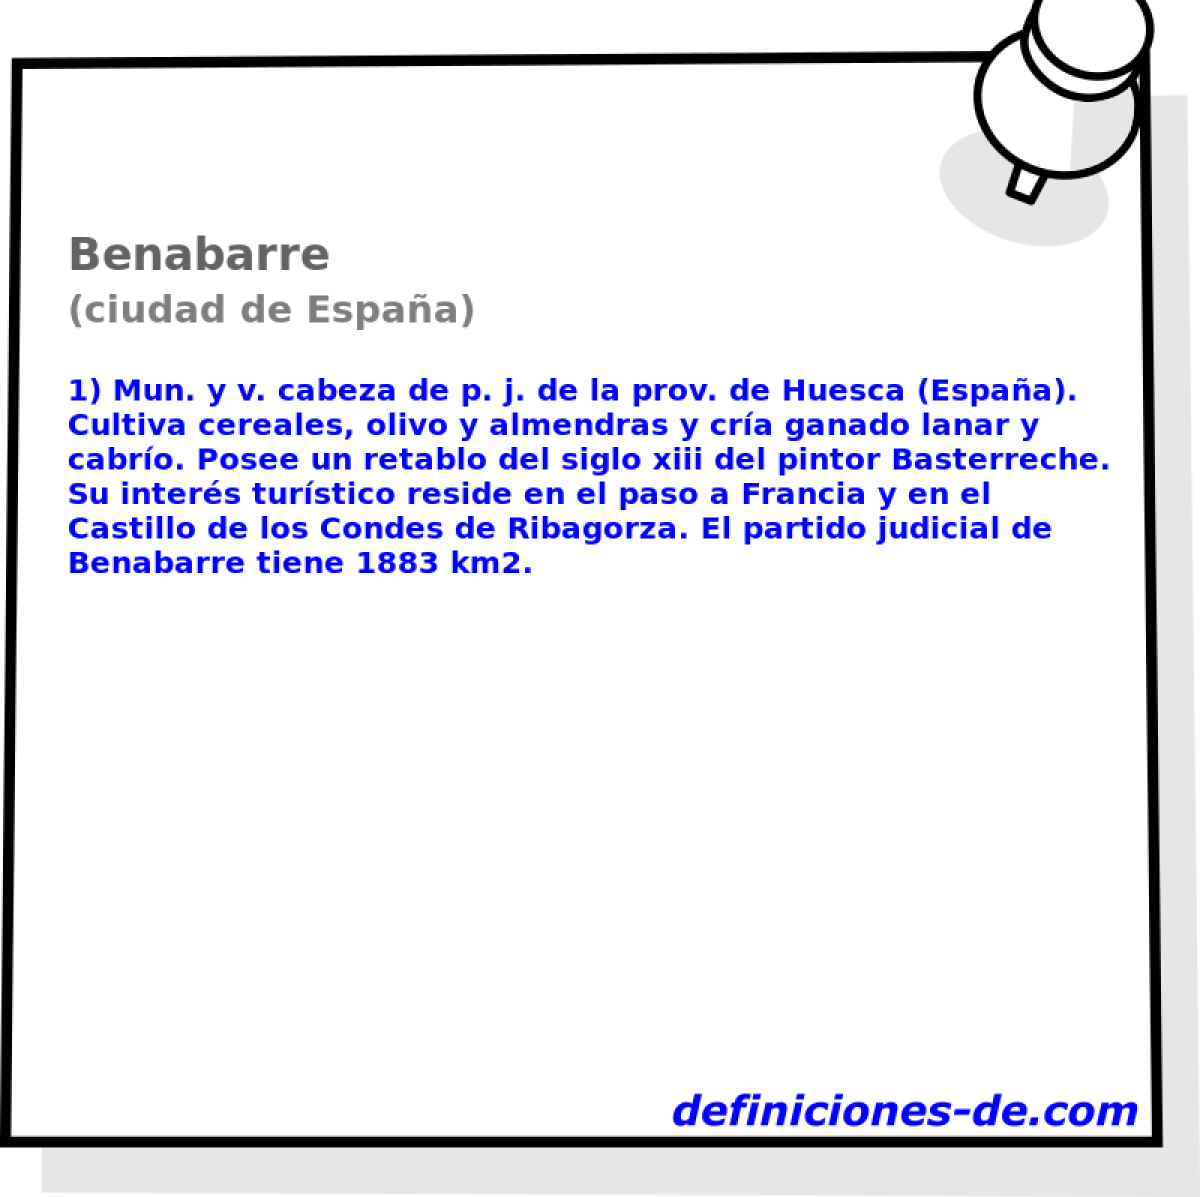 Benabarre (ciudad de Espaa)